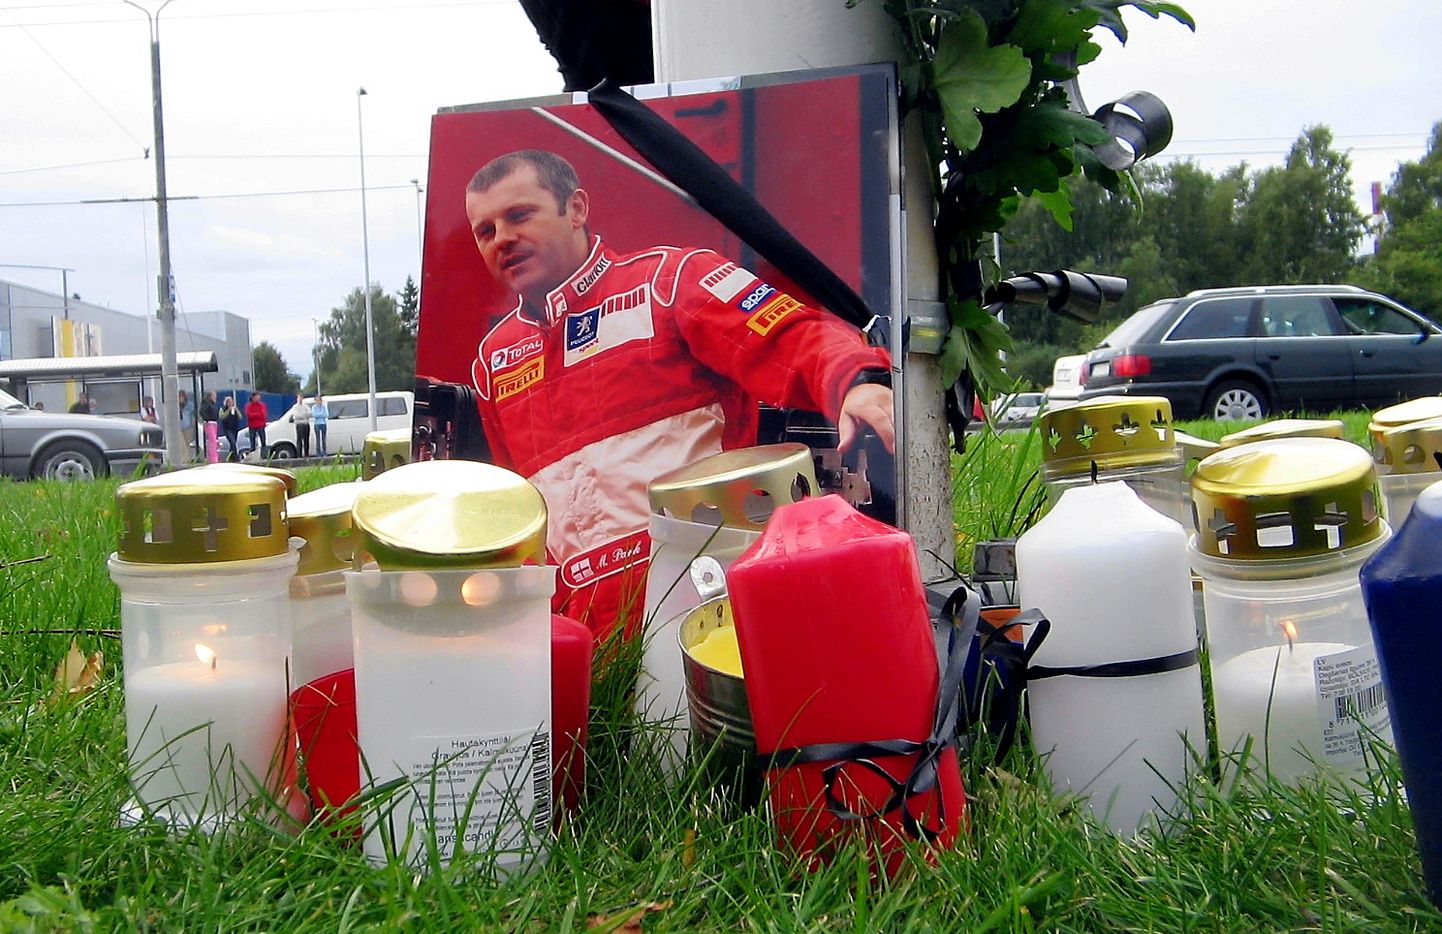 2005. aasta Autoralli MM-sarja Suurbritannia etapi 15. kiiruskatsel tegi Markko Märtin (Peugeot) üliraske avarii, kaardilugeja Michael Park hukkus. Tallinnas mälestati hukkunud kaardilugejat Peugeoti Sõpruse pst. esinduse ees.